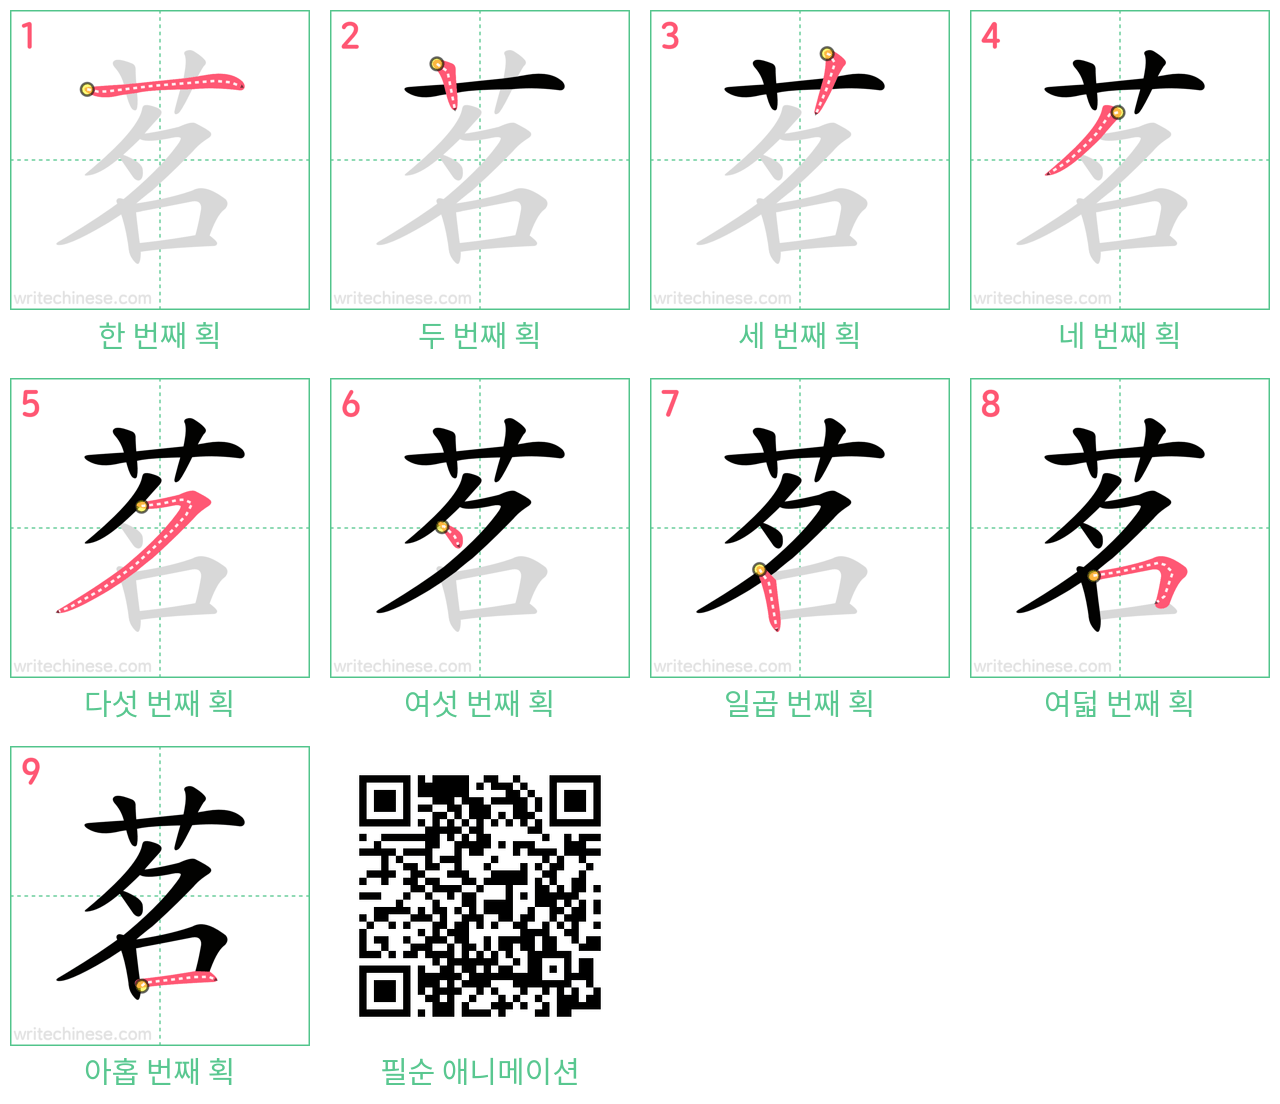 茗 step-by-step stroke order diagrams